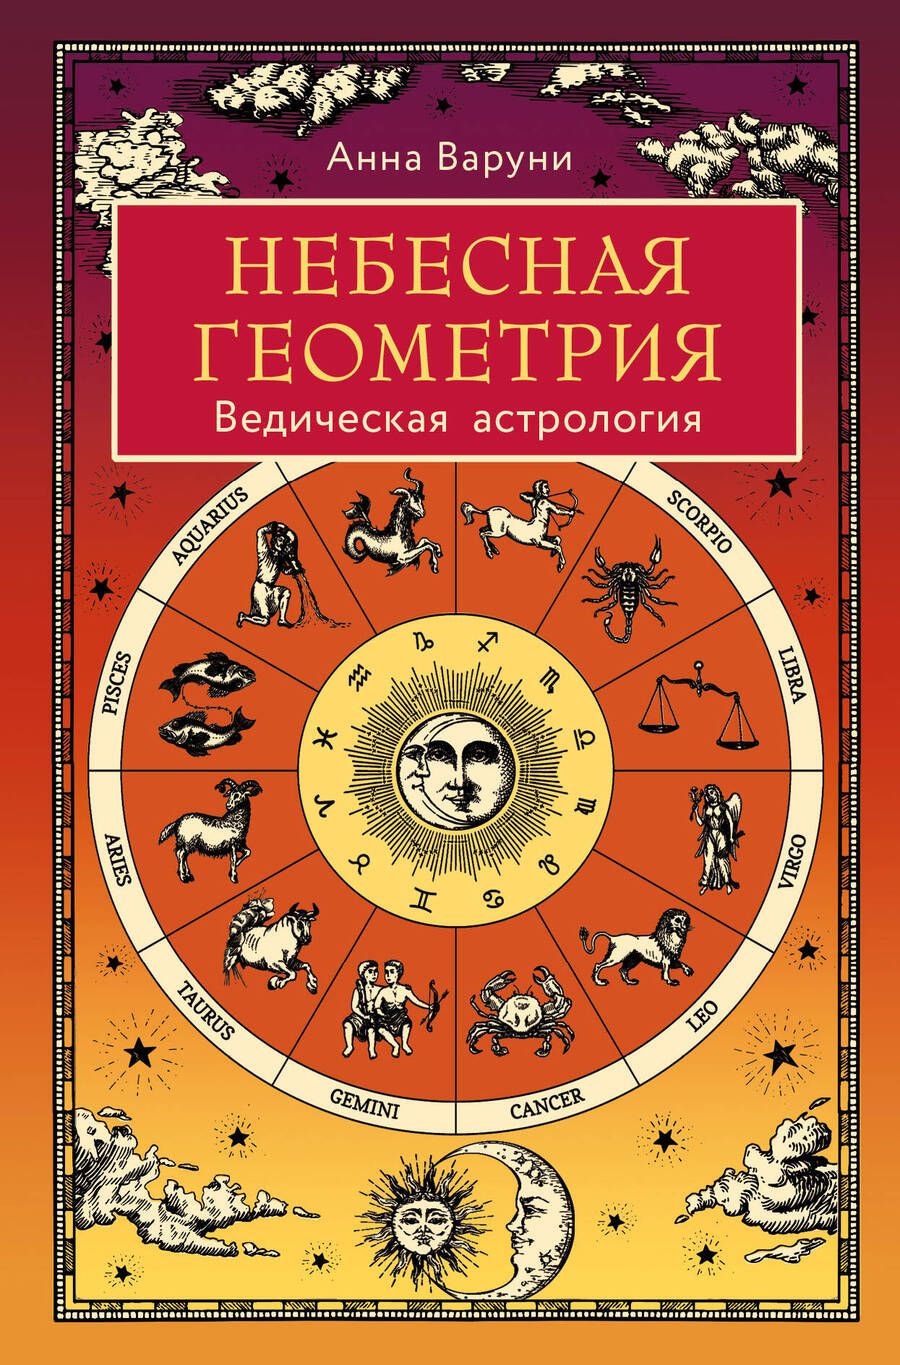 Обложка книги "Варуни: Небесная геометрия. Ведическая астрология"